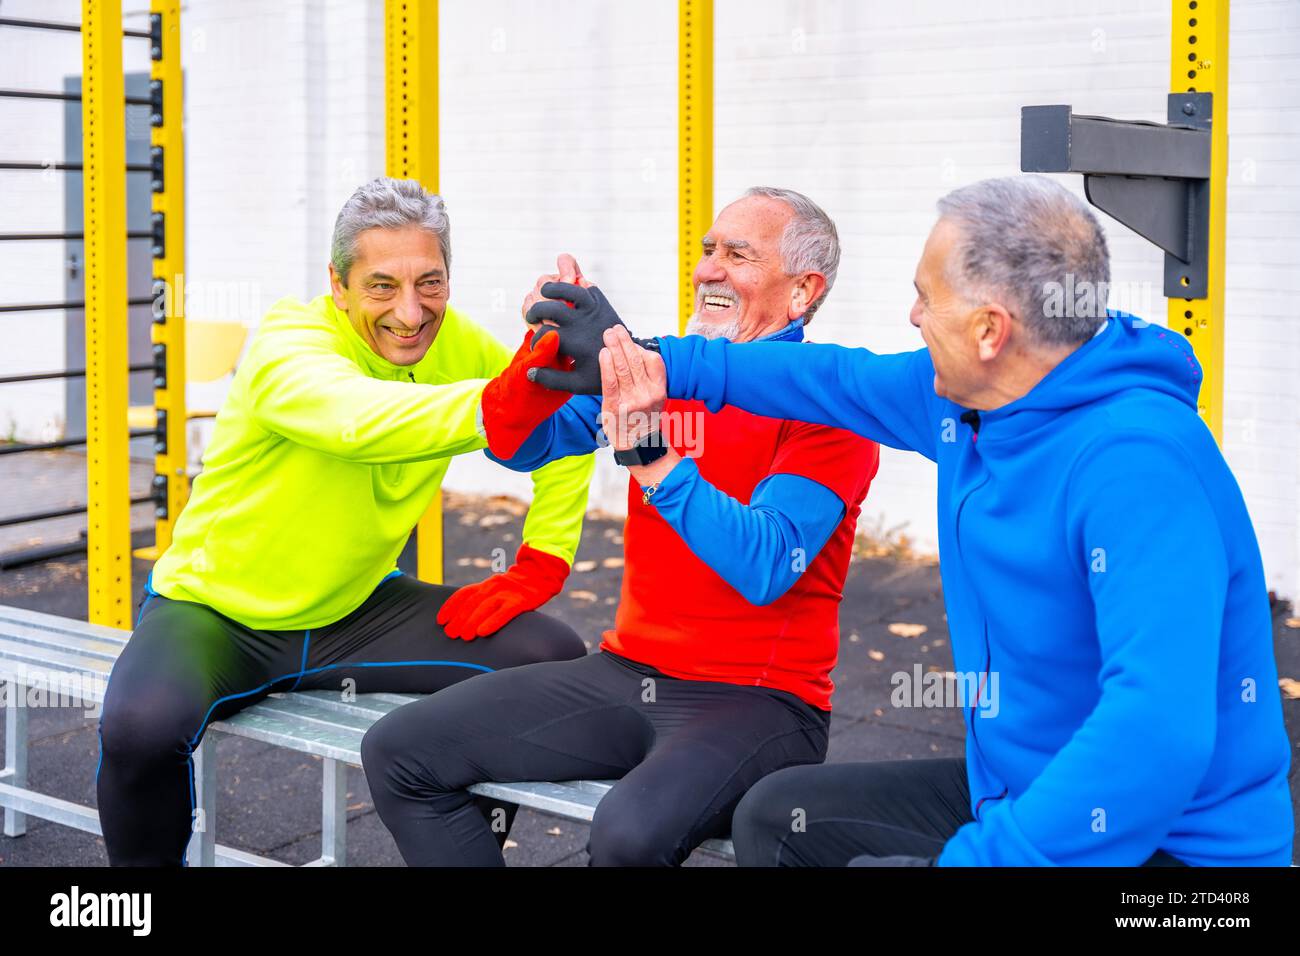 Drei ältere Männer im Ruhestand geben High-Five auf einem Outdoor-Sportplatz Stockfoto